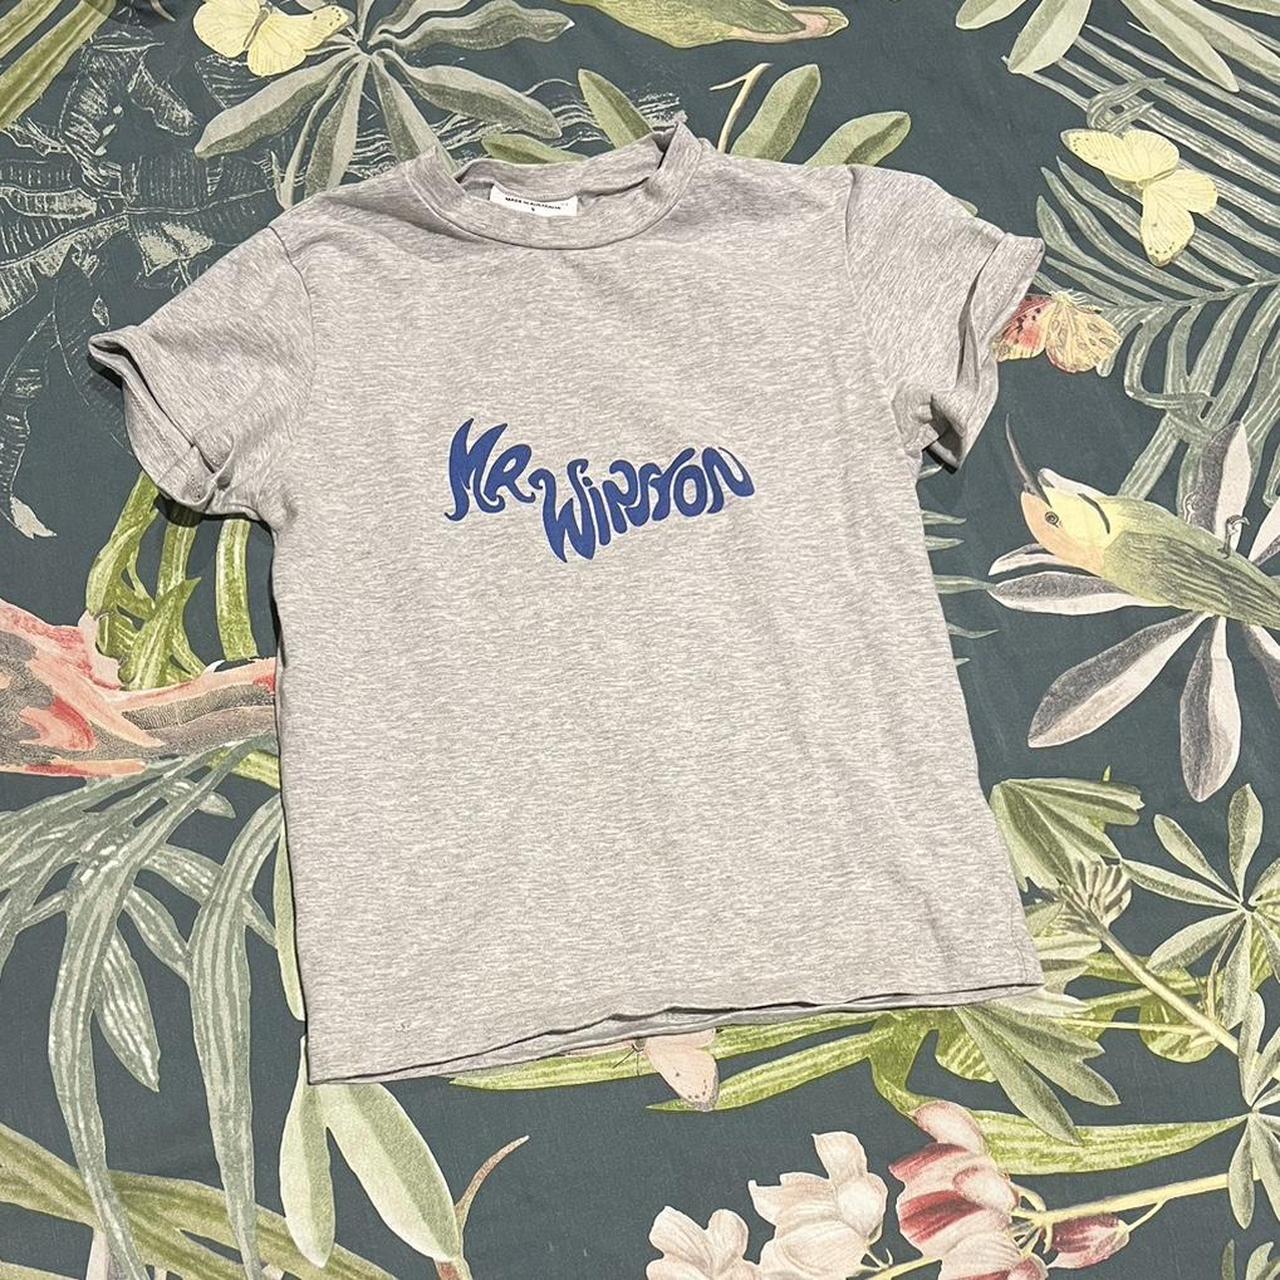 Mr Winston Women's T-shirt | Depop